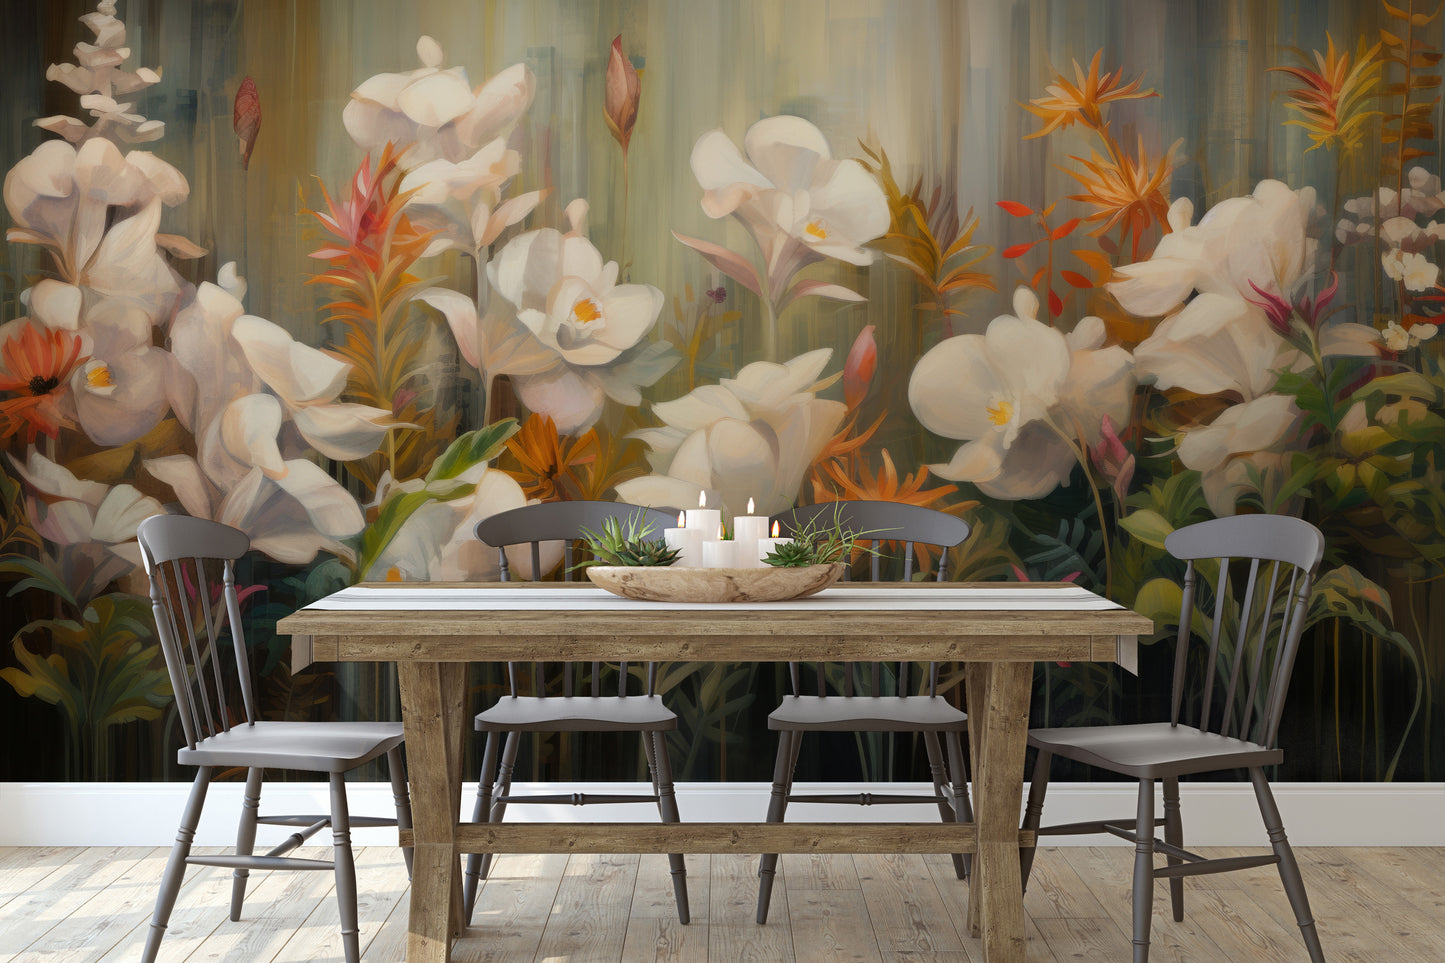 Fototapeta malowana o nazwie Rainforest Orchid Delight pokazana w aranżacji wnętrza.